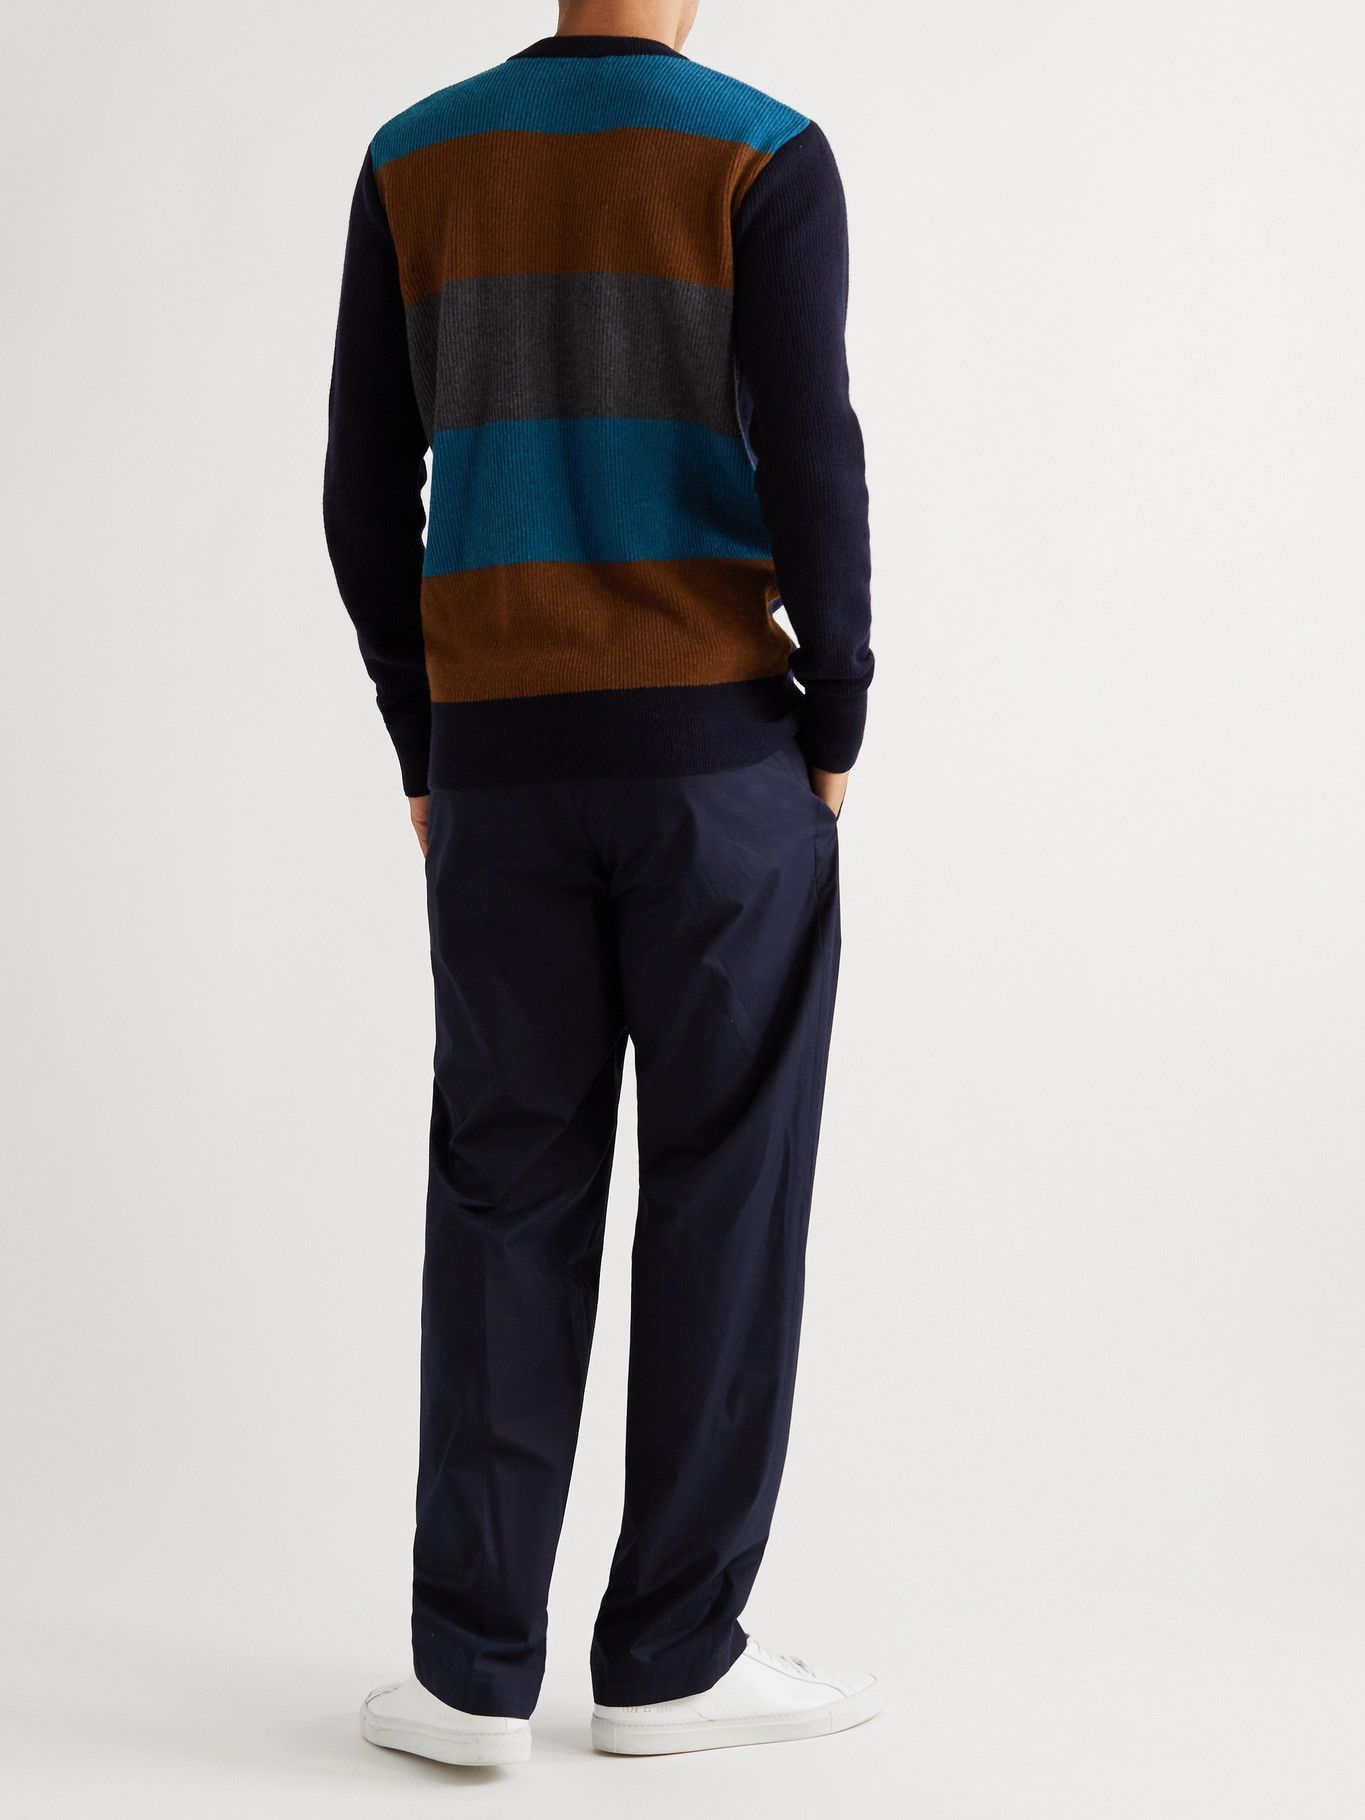 Oliver Spencer - Blenheim Striped Wool Sweater - Blue